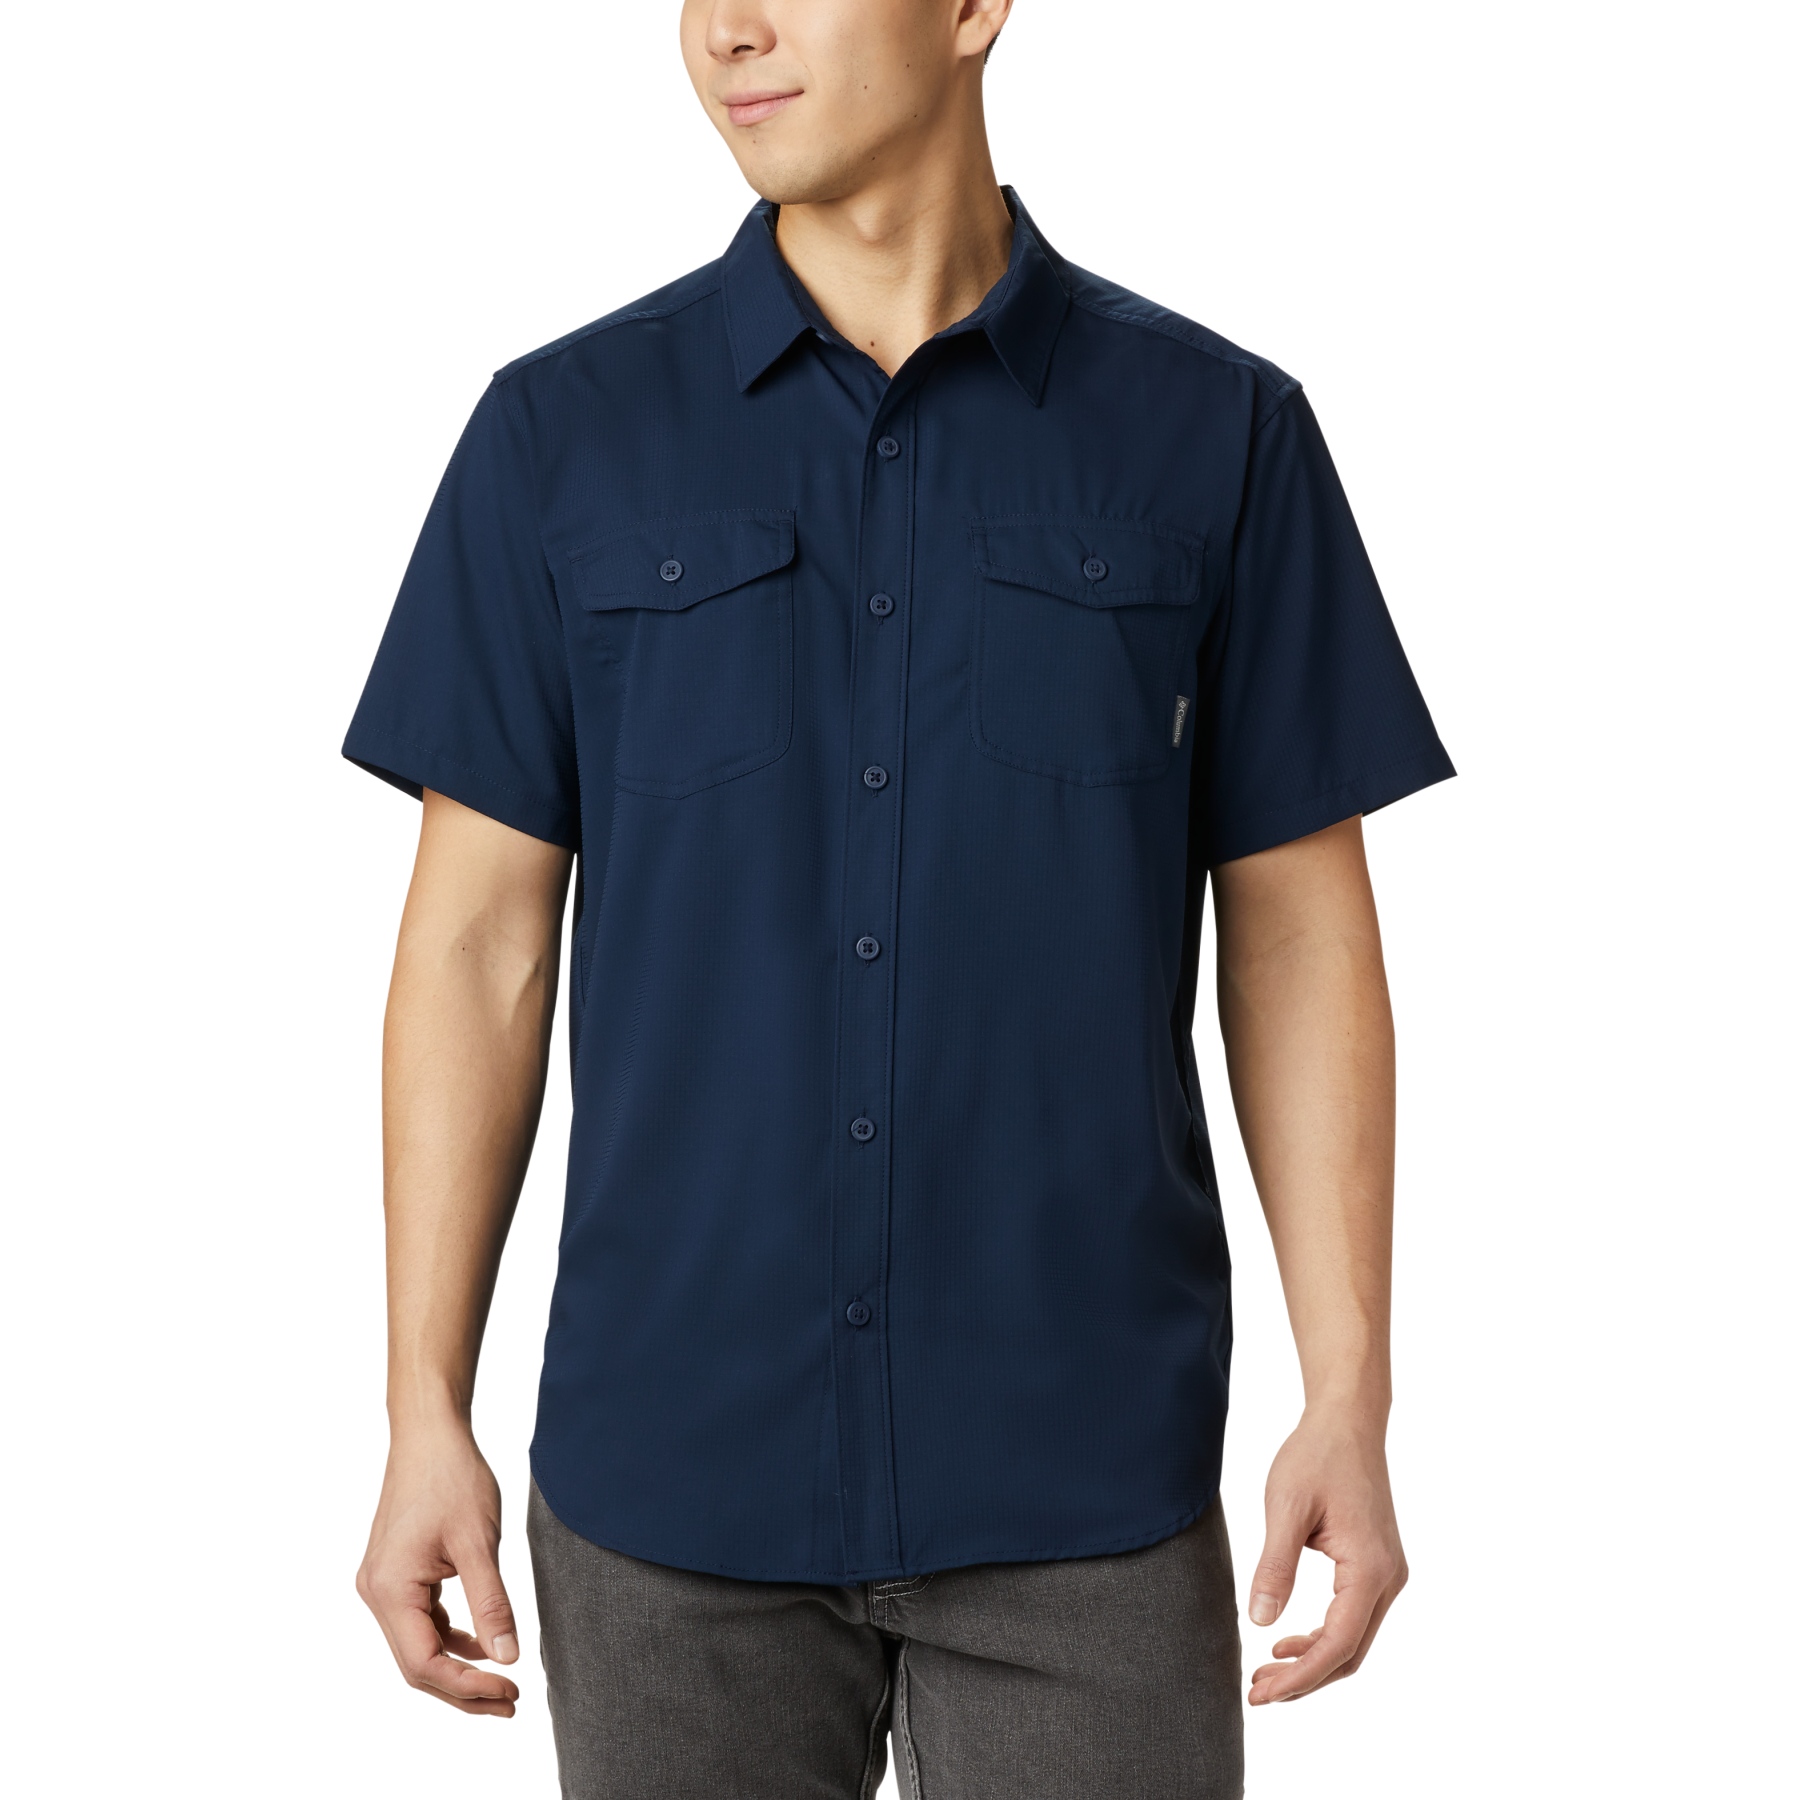 Picture of Columbia Utilizer II Solid Short Sleeve Shirt Men - Collegiate Navy